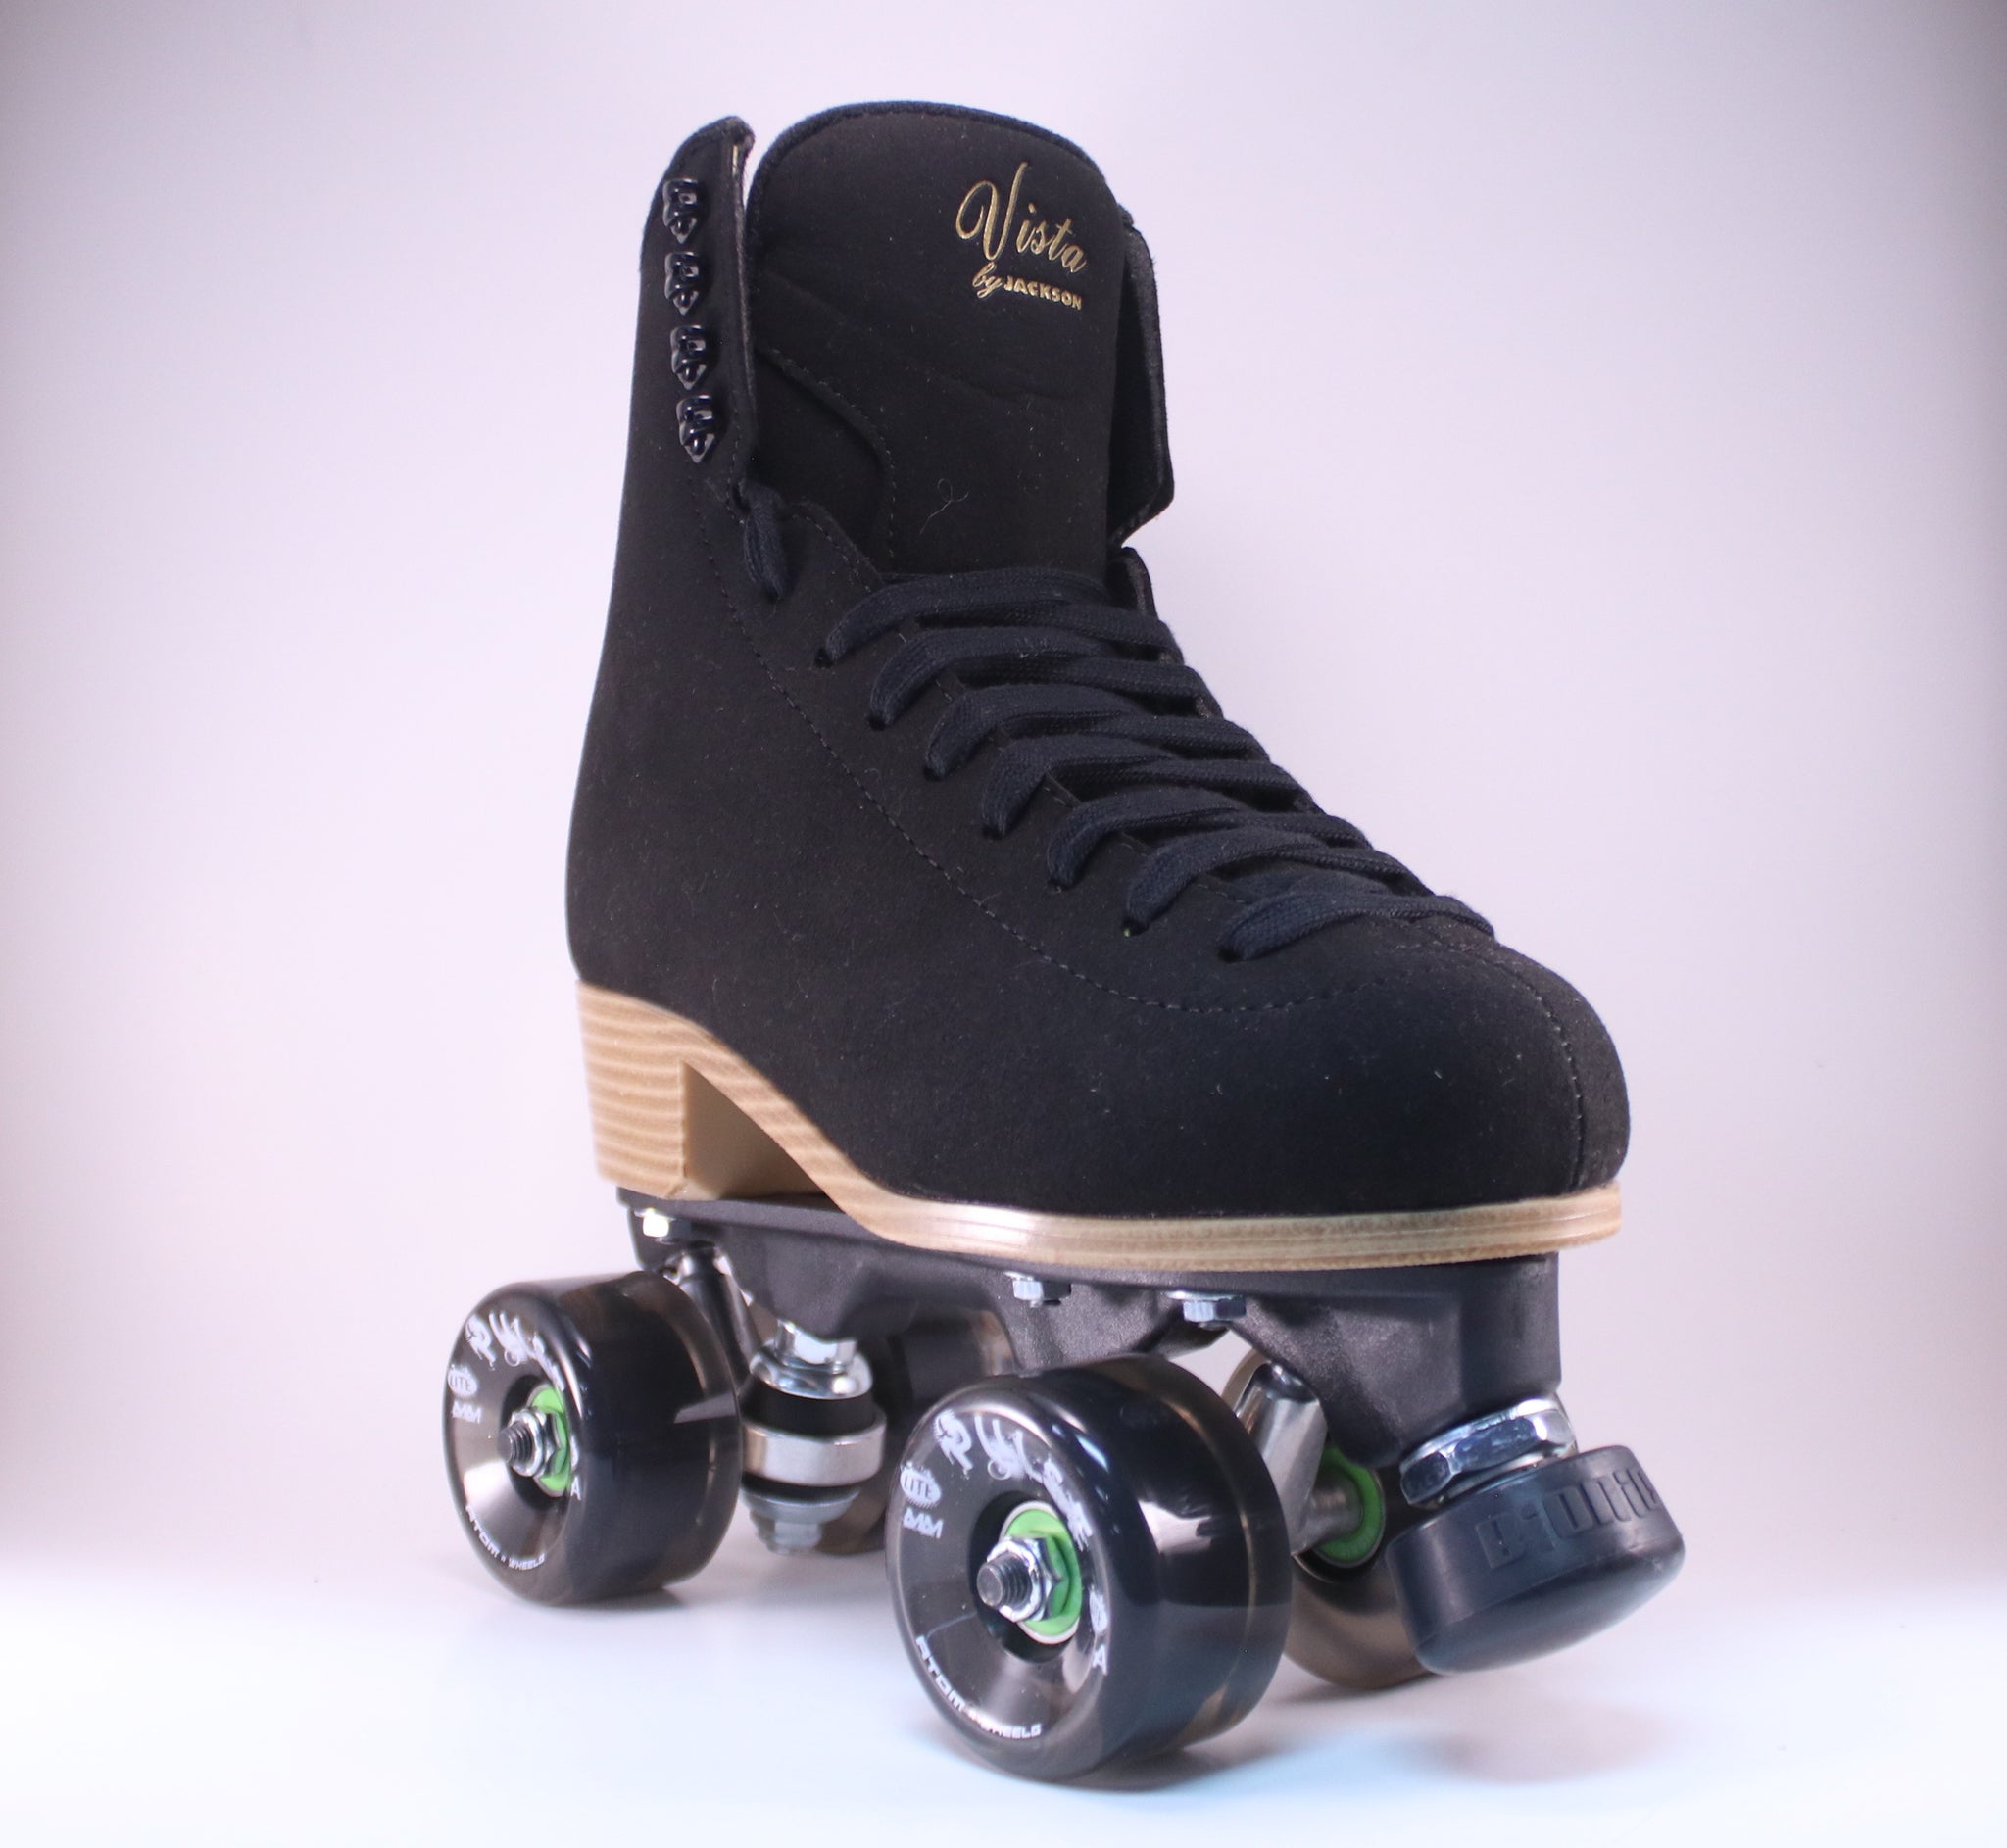 Jackson Vista Roller Skates